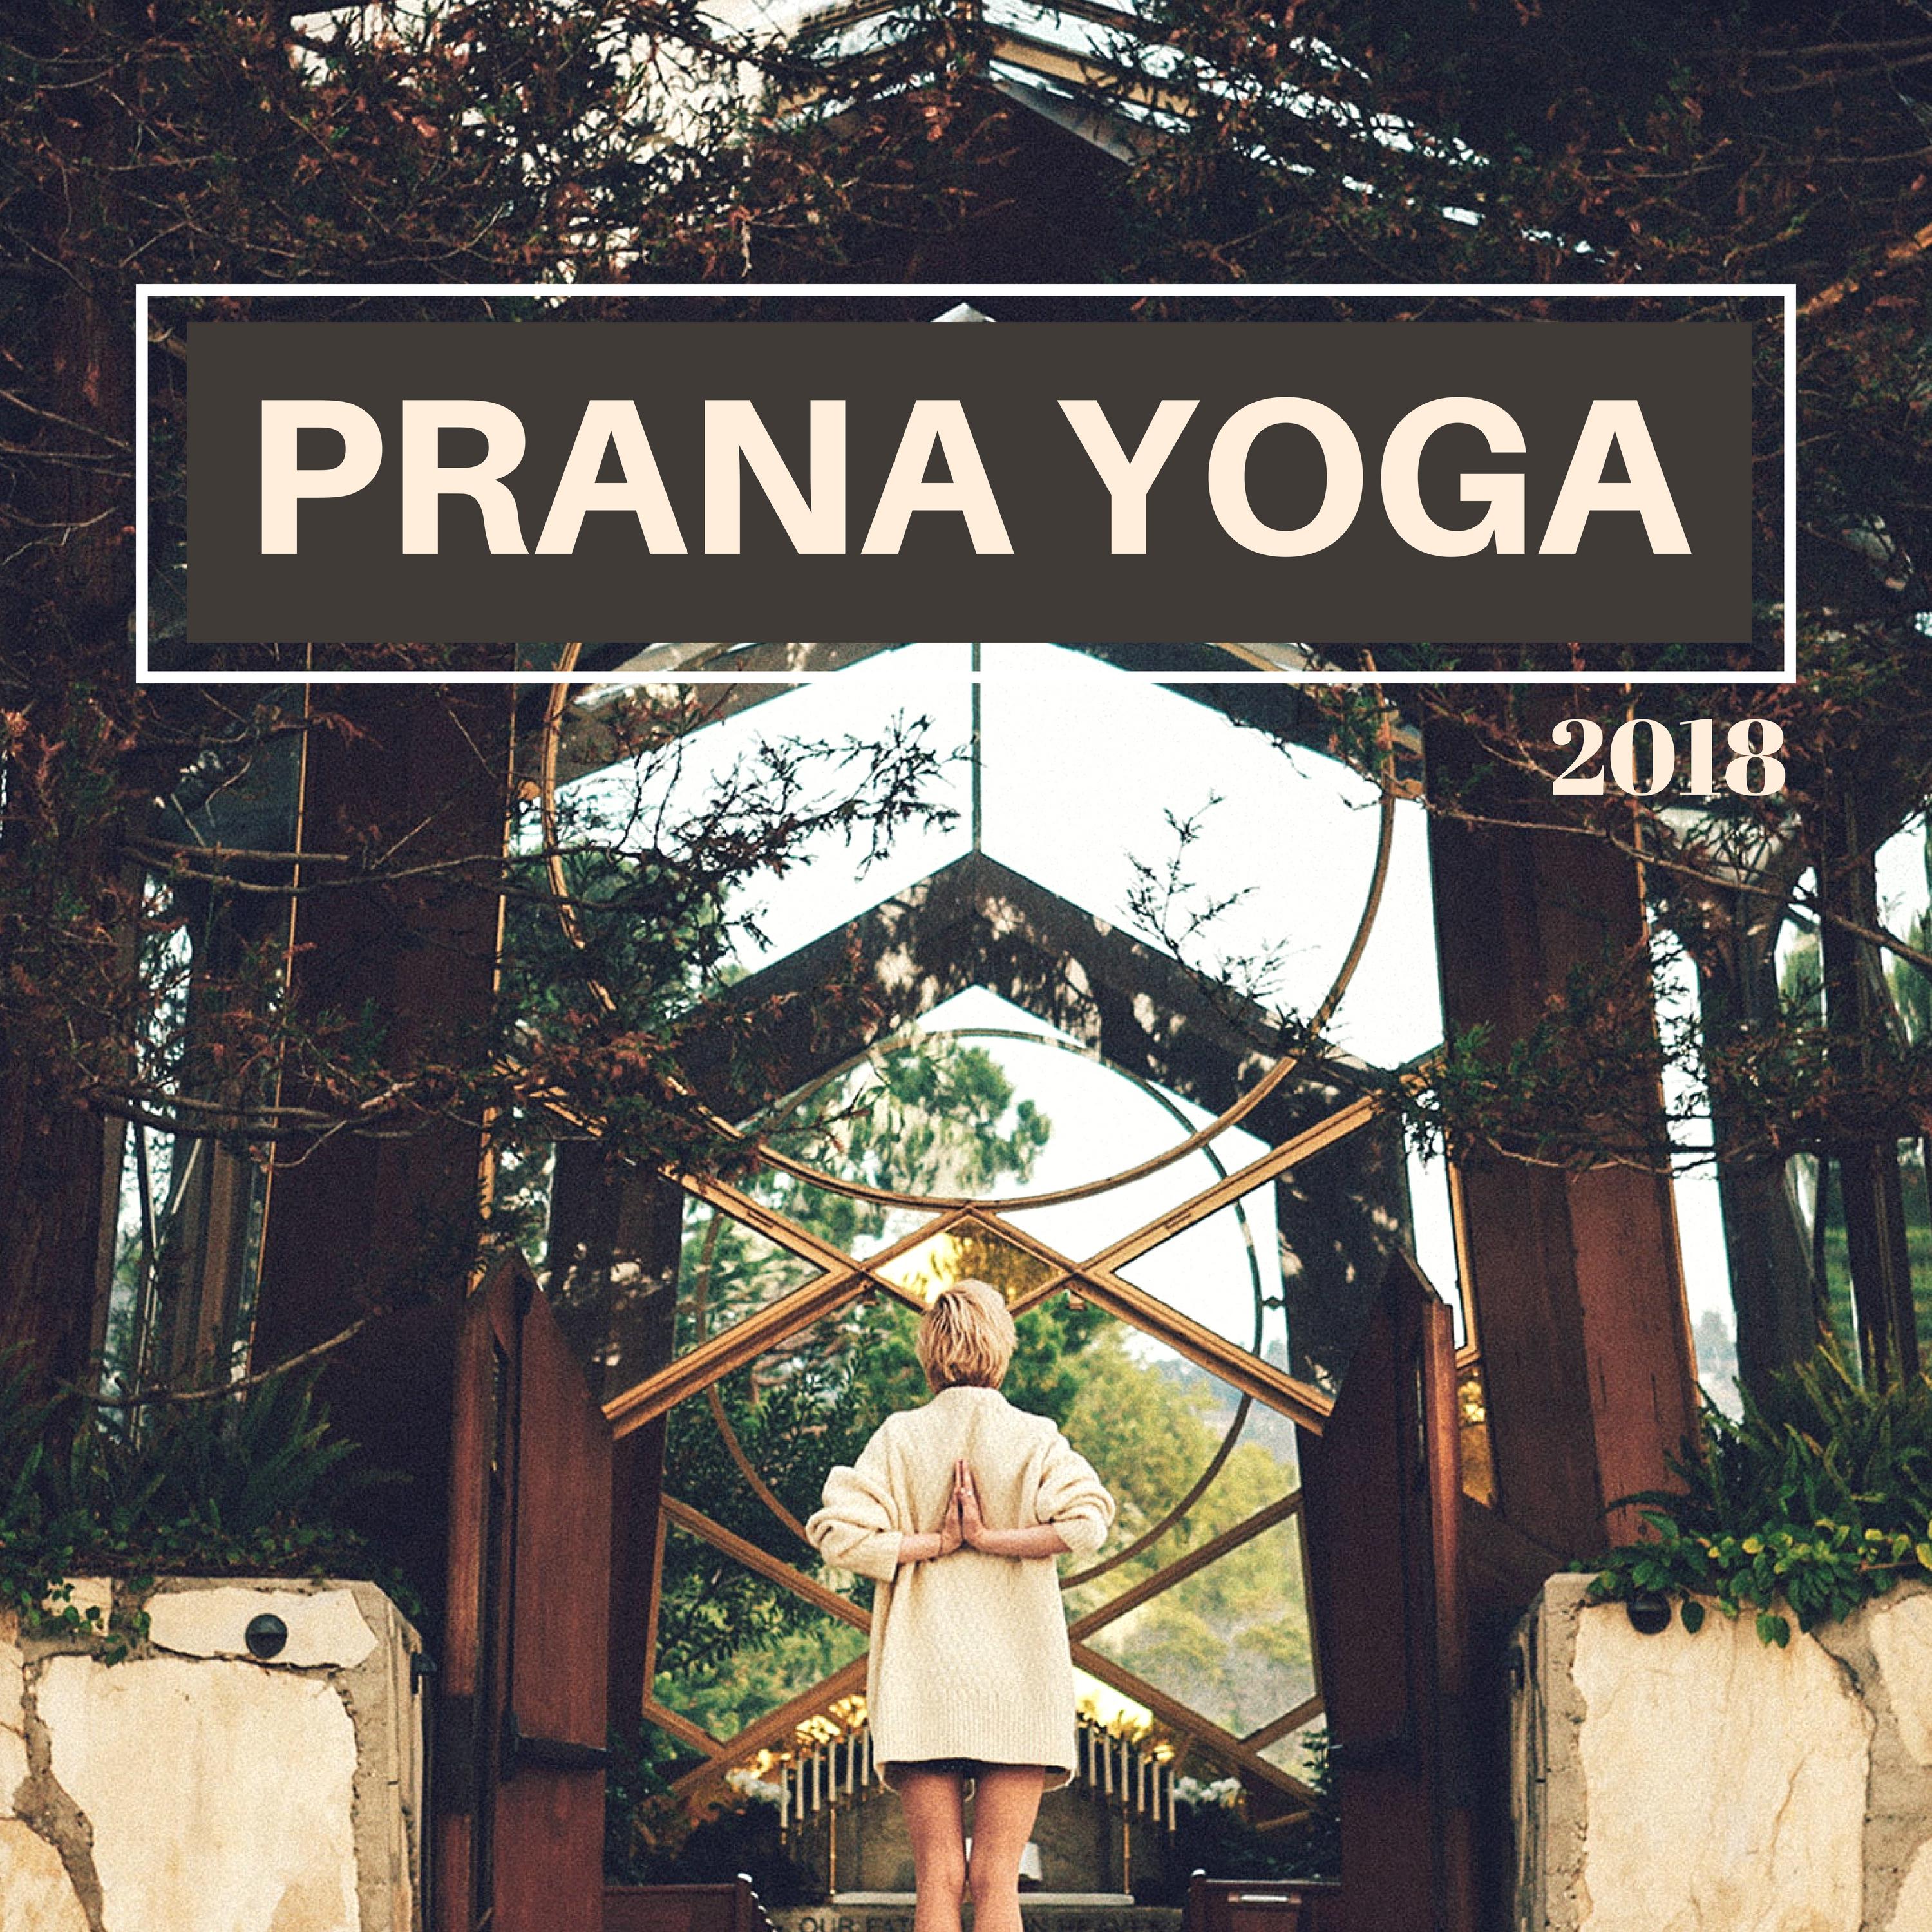 Prana Yoga 2018 - Musica Oriental para Hacer Yoga y Ruido Blanco para la Limpieza de los 7 Chakras